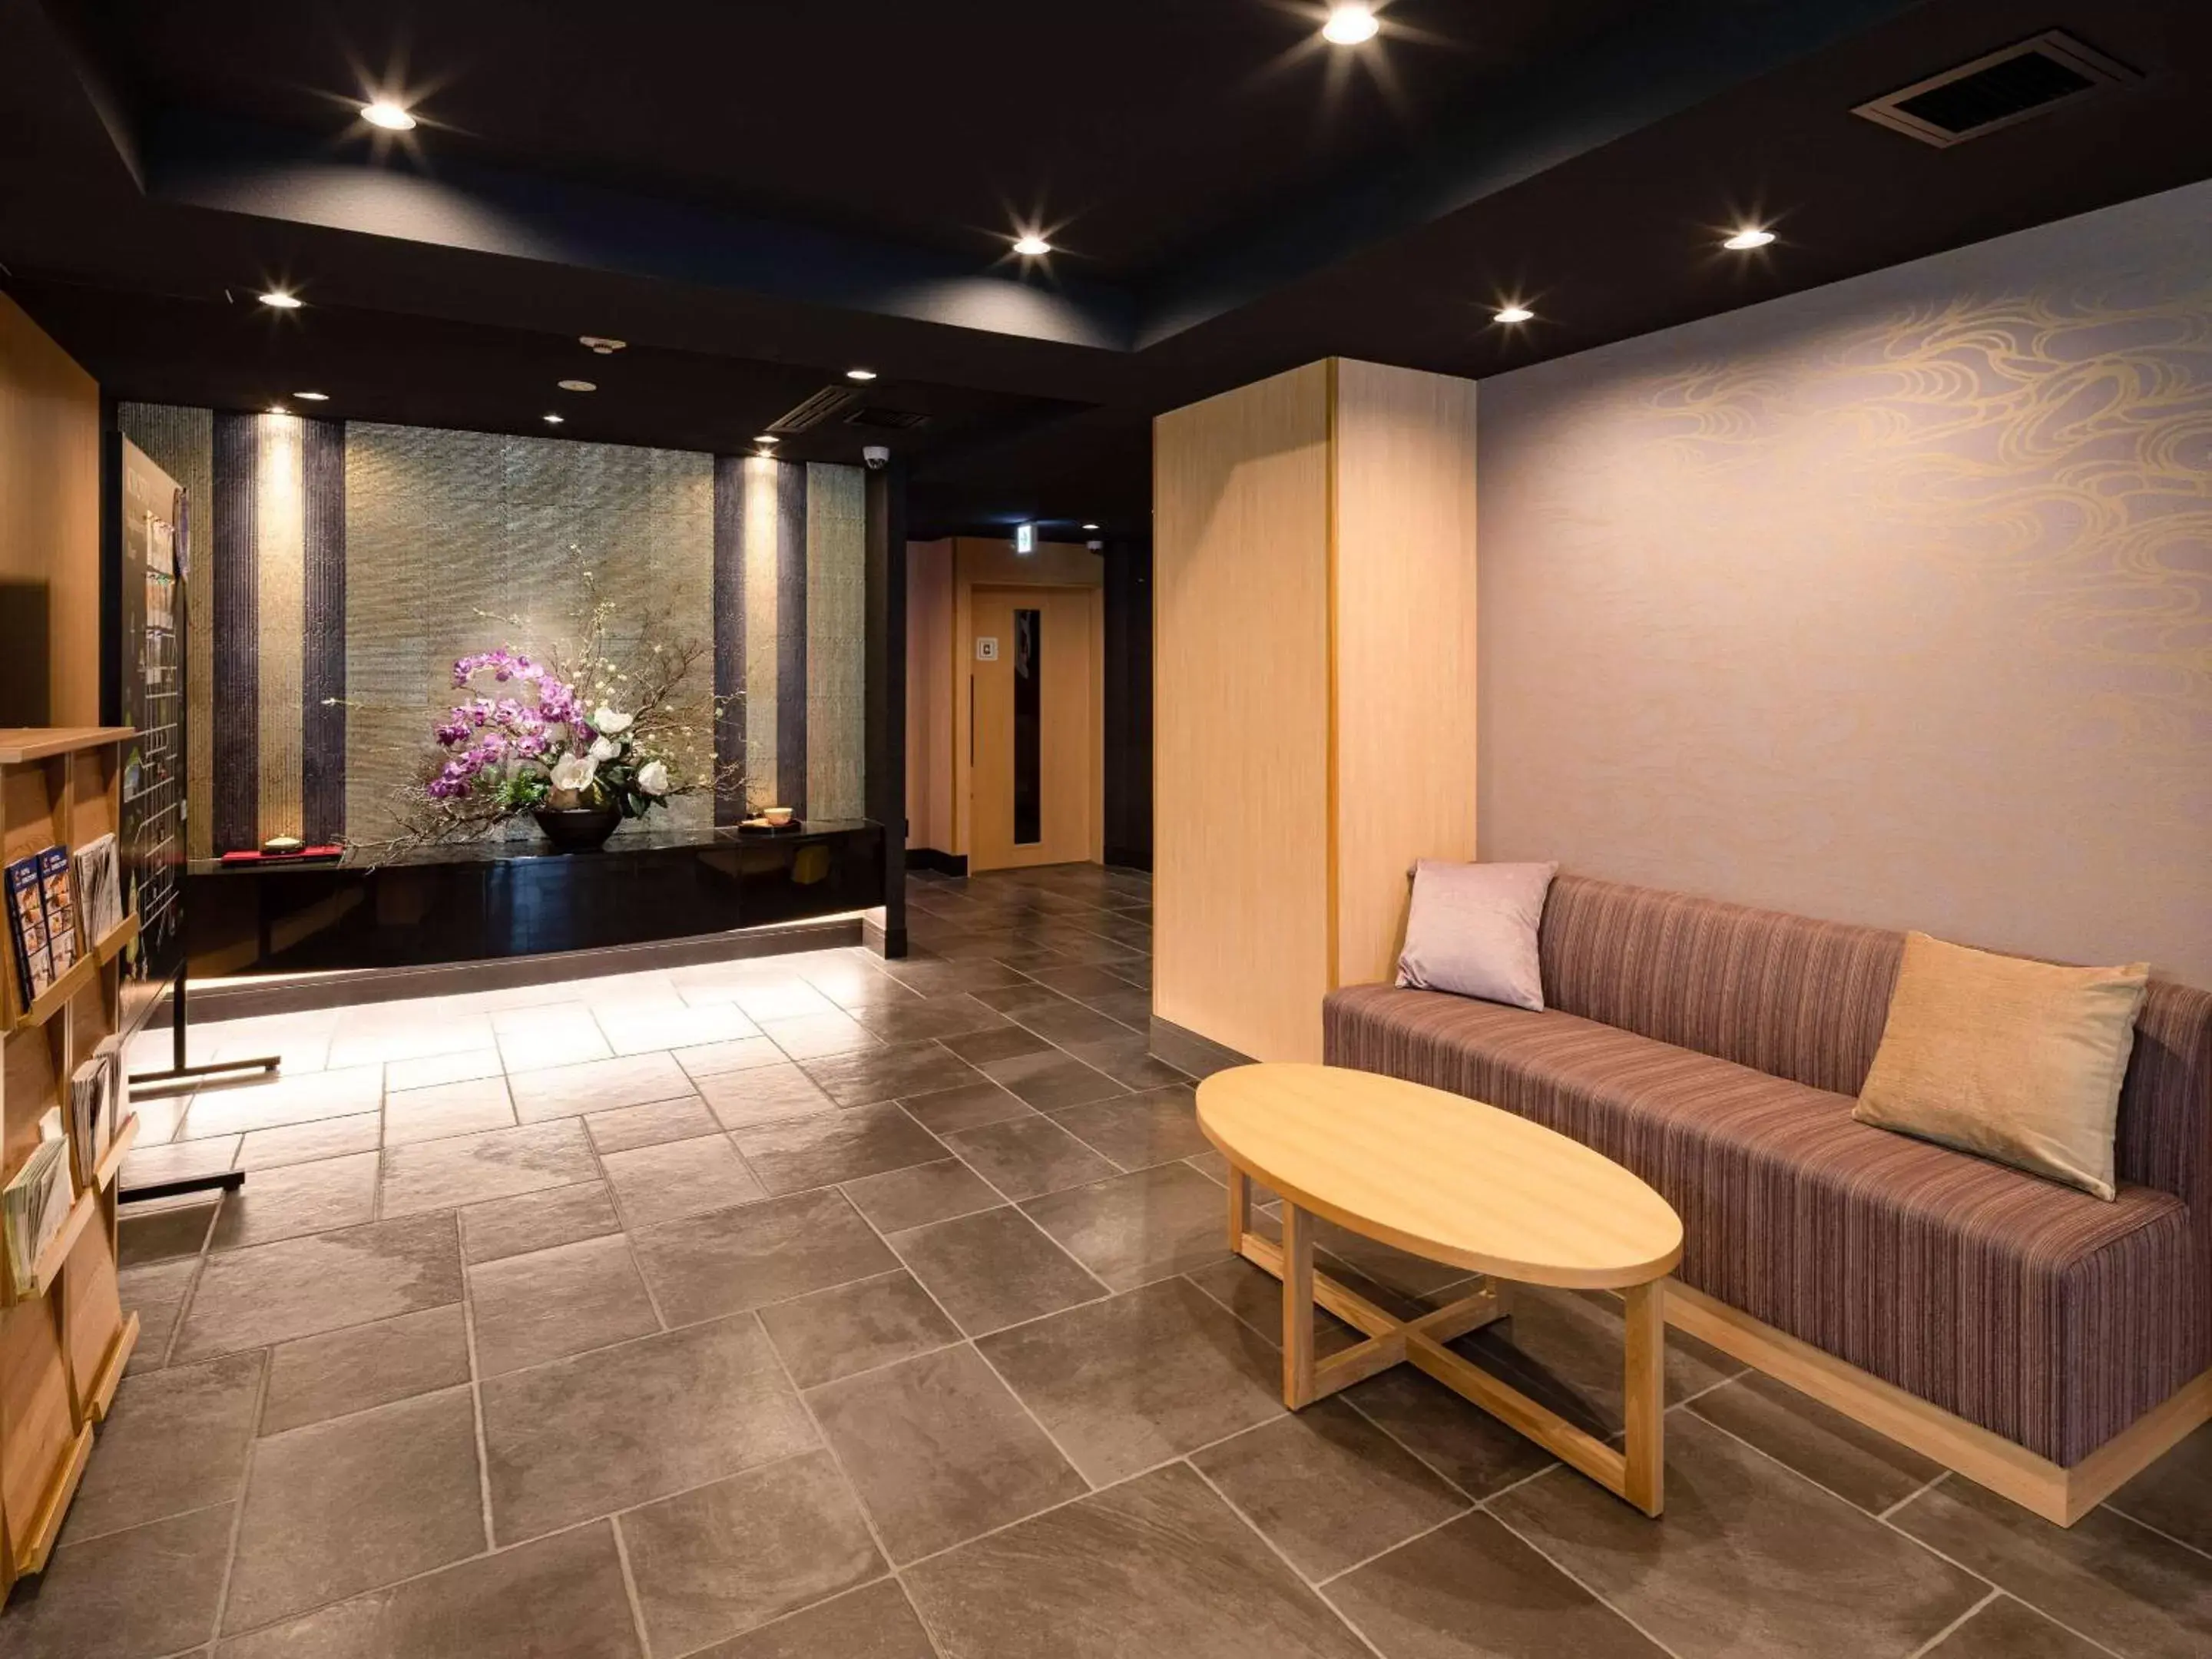 Lobby or reception, Lobby/Reception in Comfort Inn Kyoto Shijokarasuma